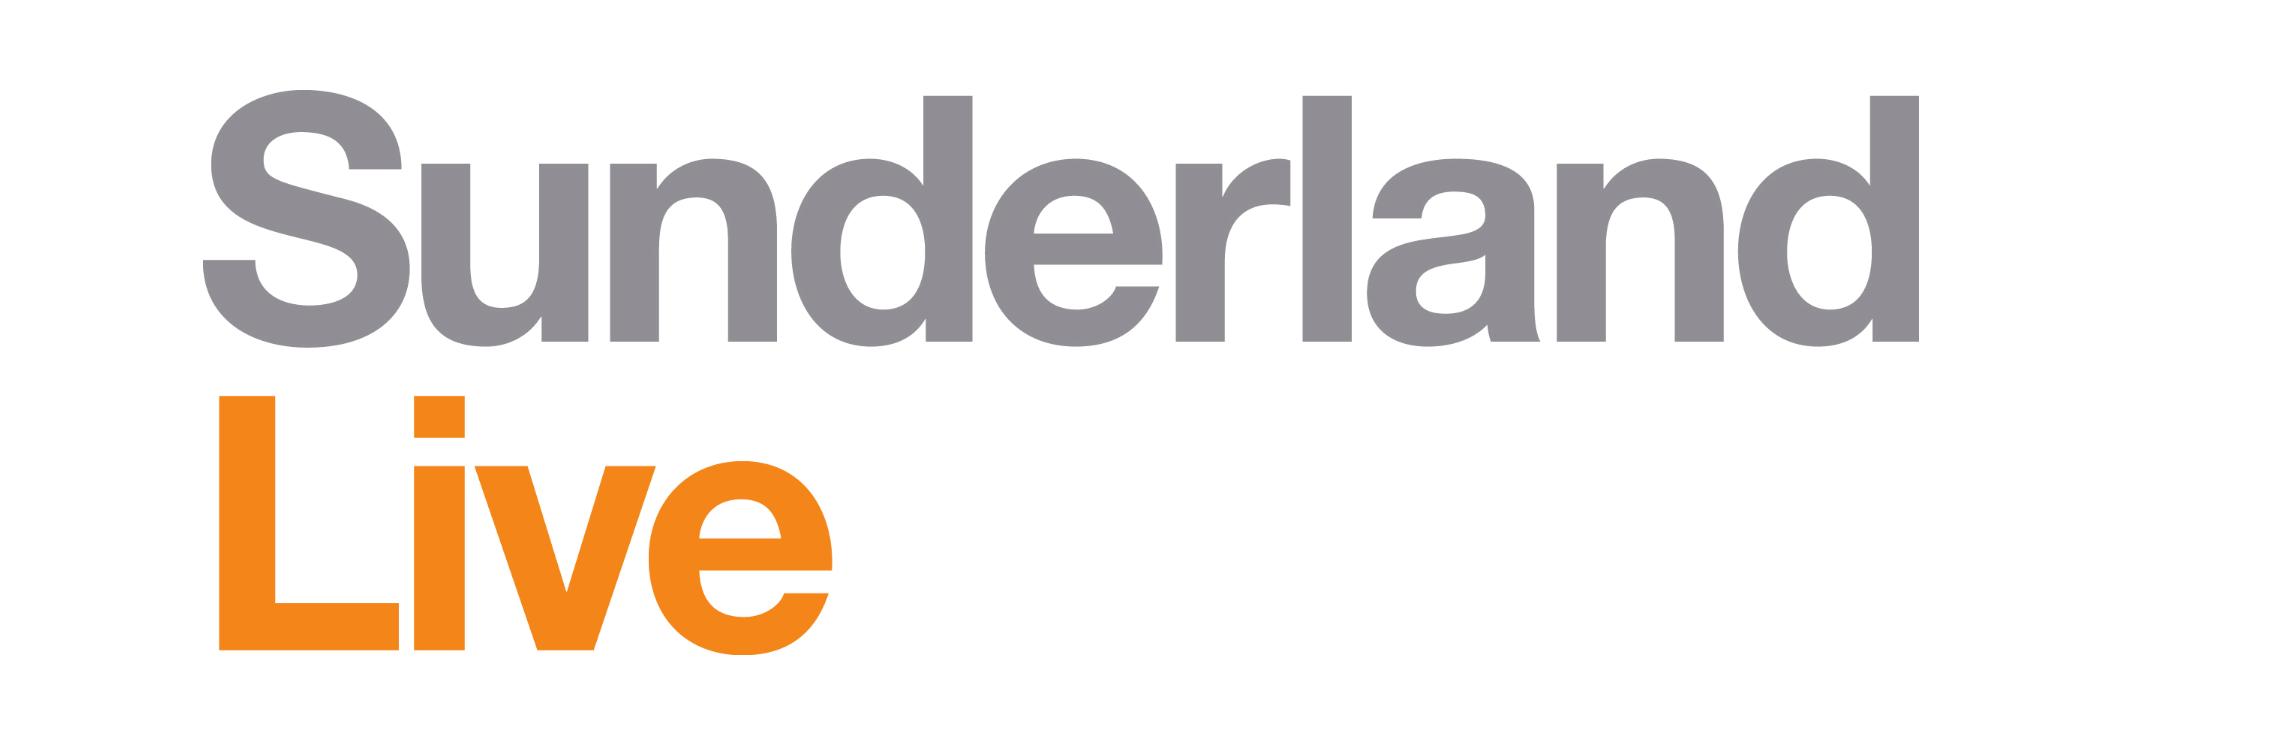 sunderland-live-logo-1416315945.png